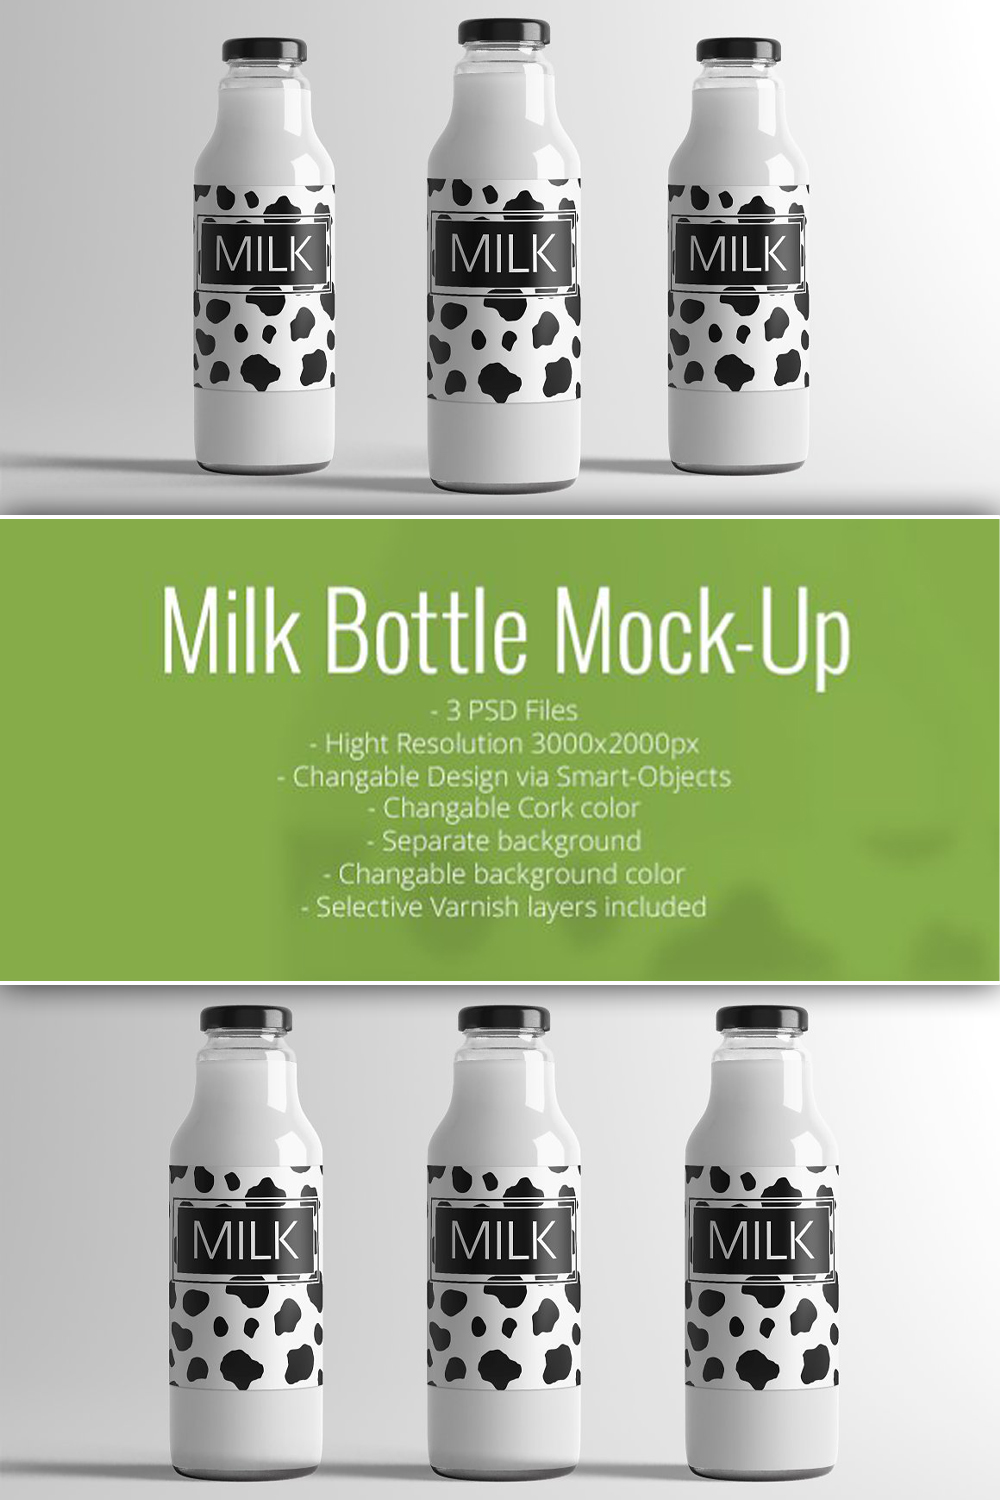 Milk bottle mock up of pinterest.